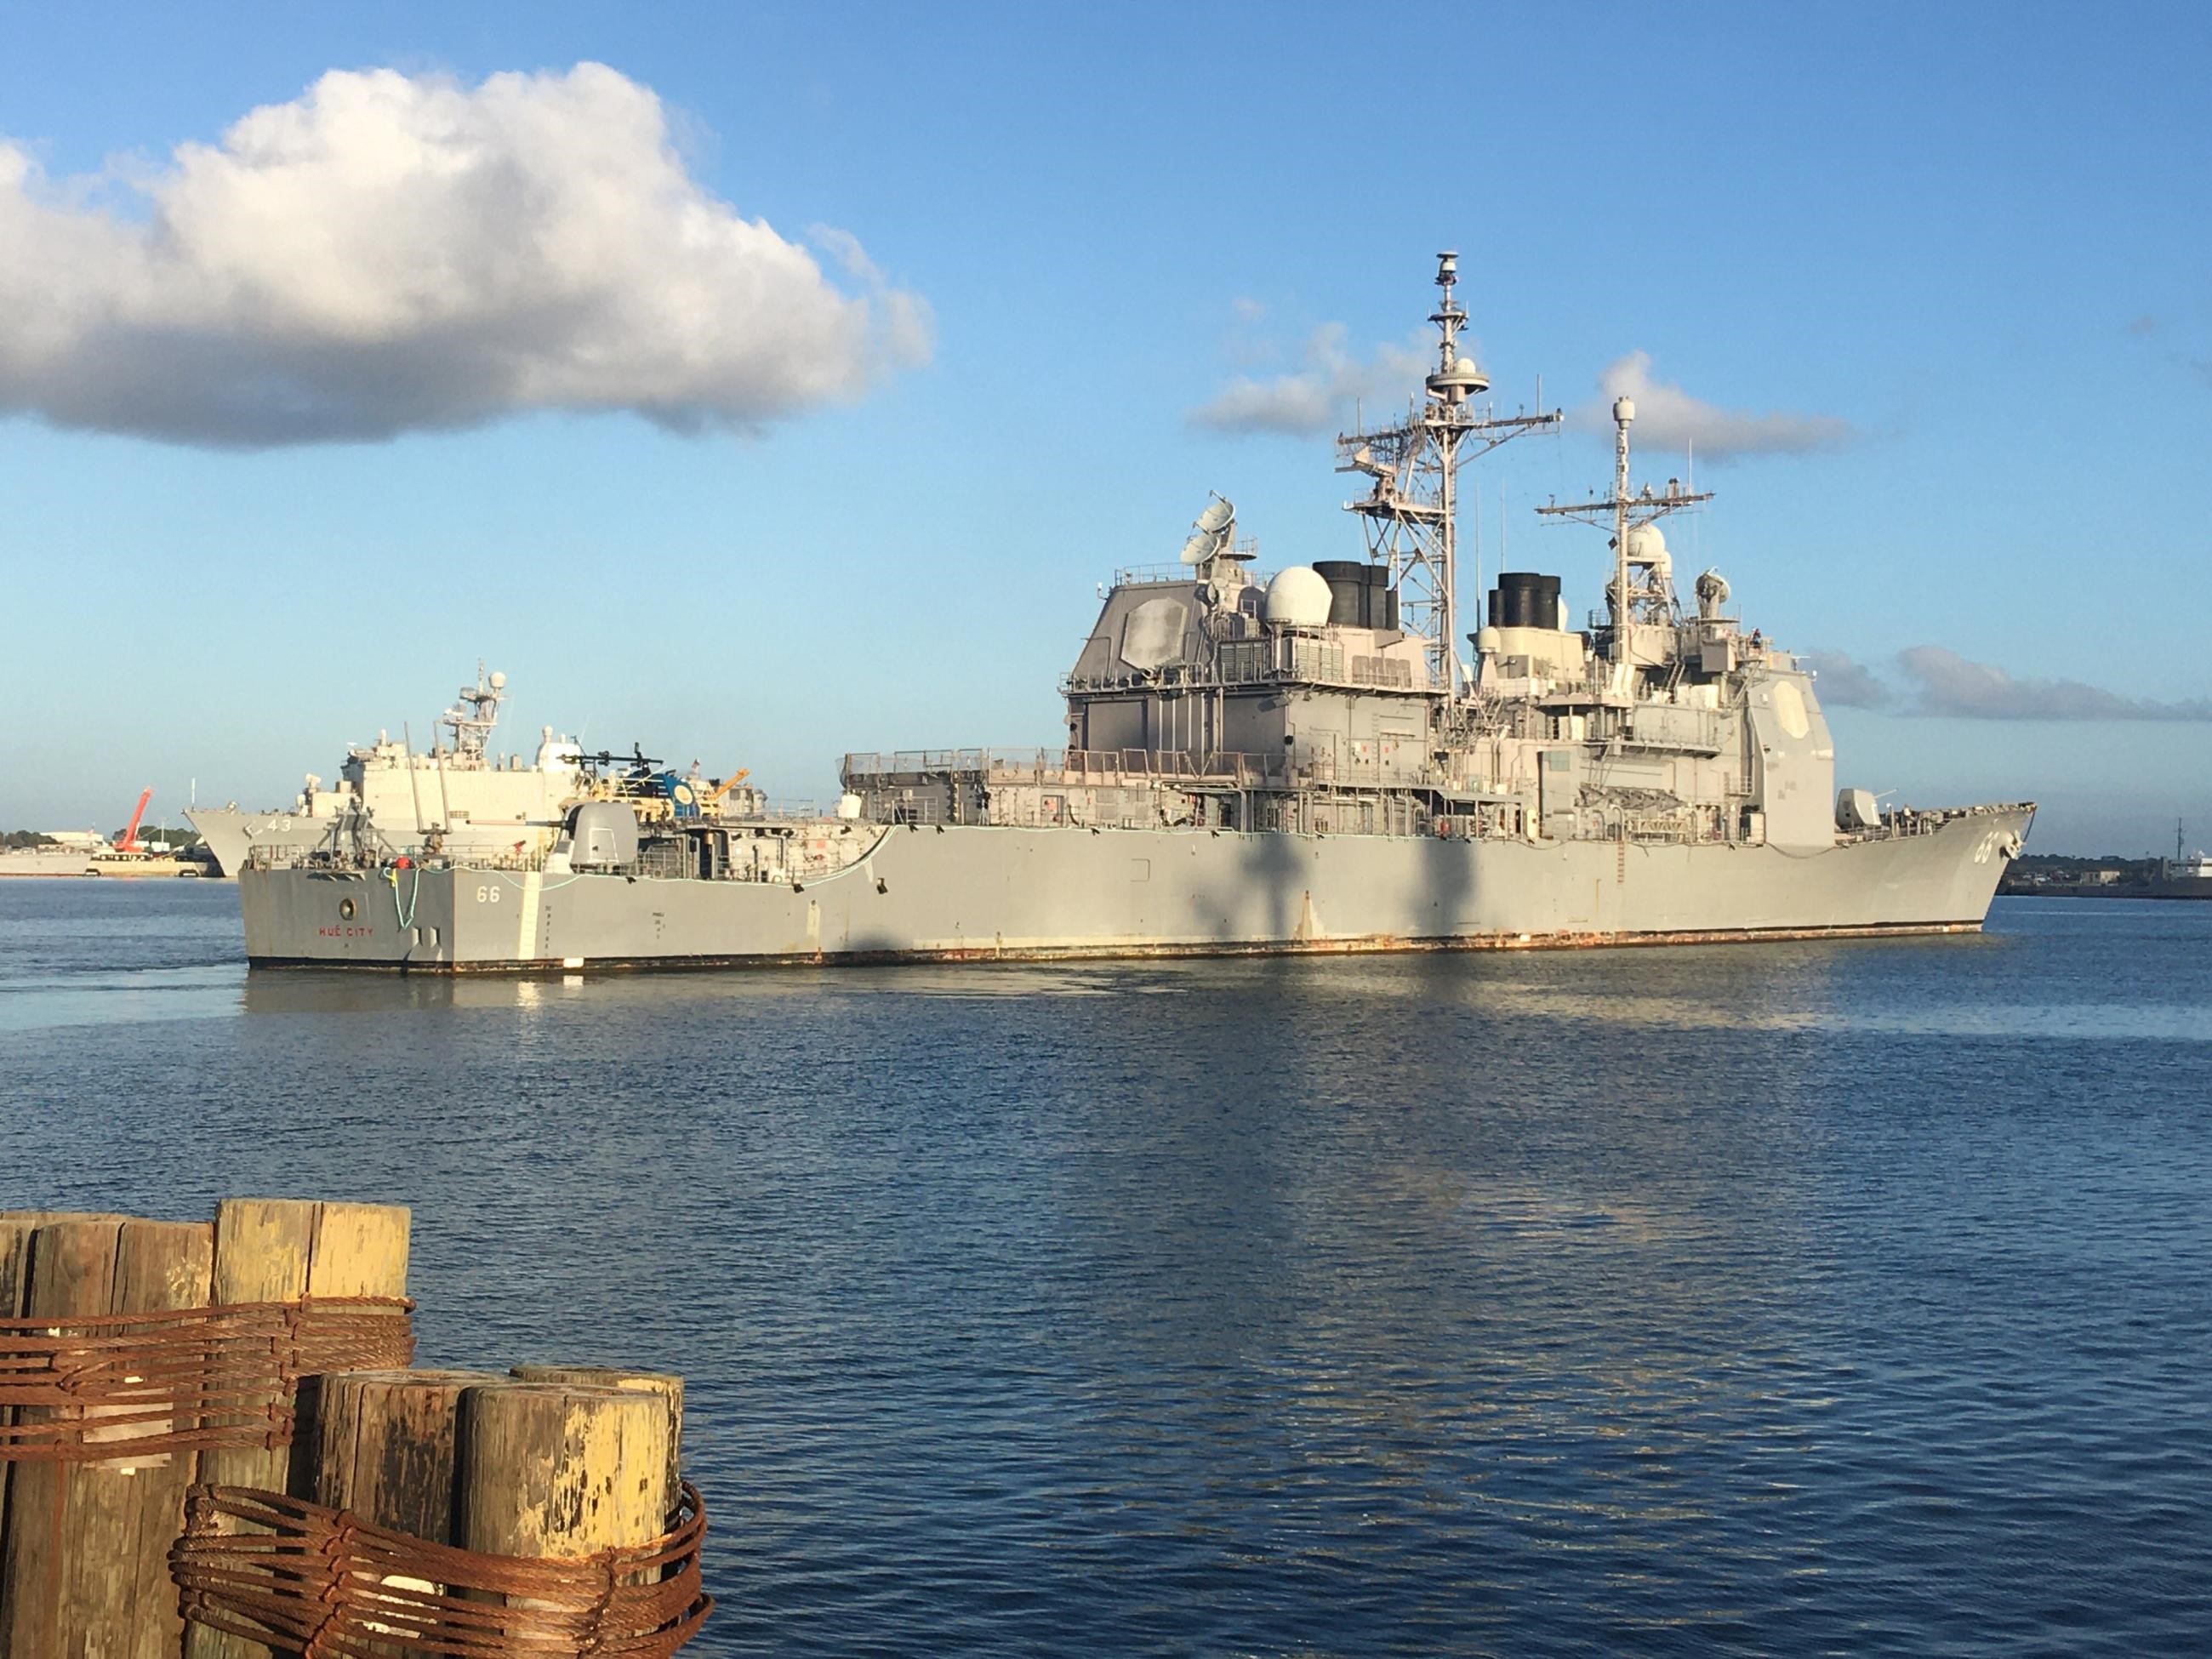 USS Hué City makes it to US Navy's cruiser modernization program